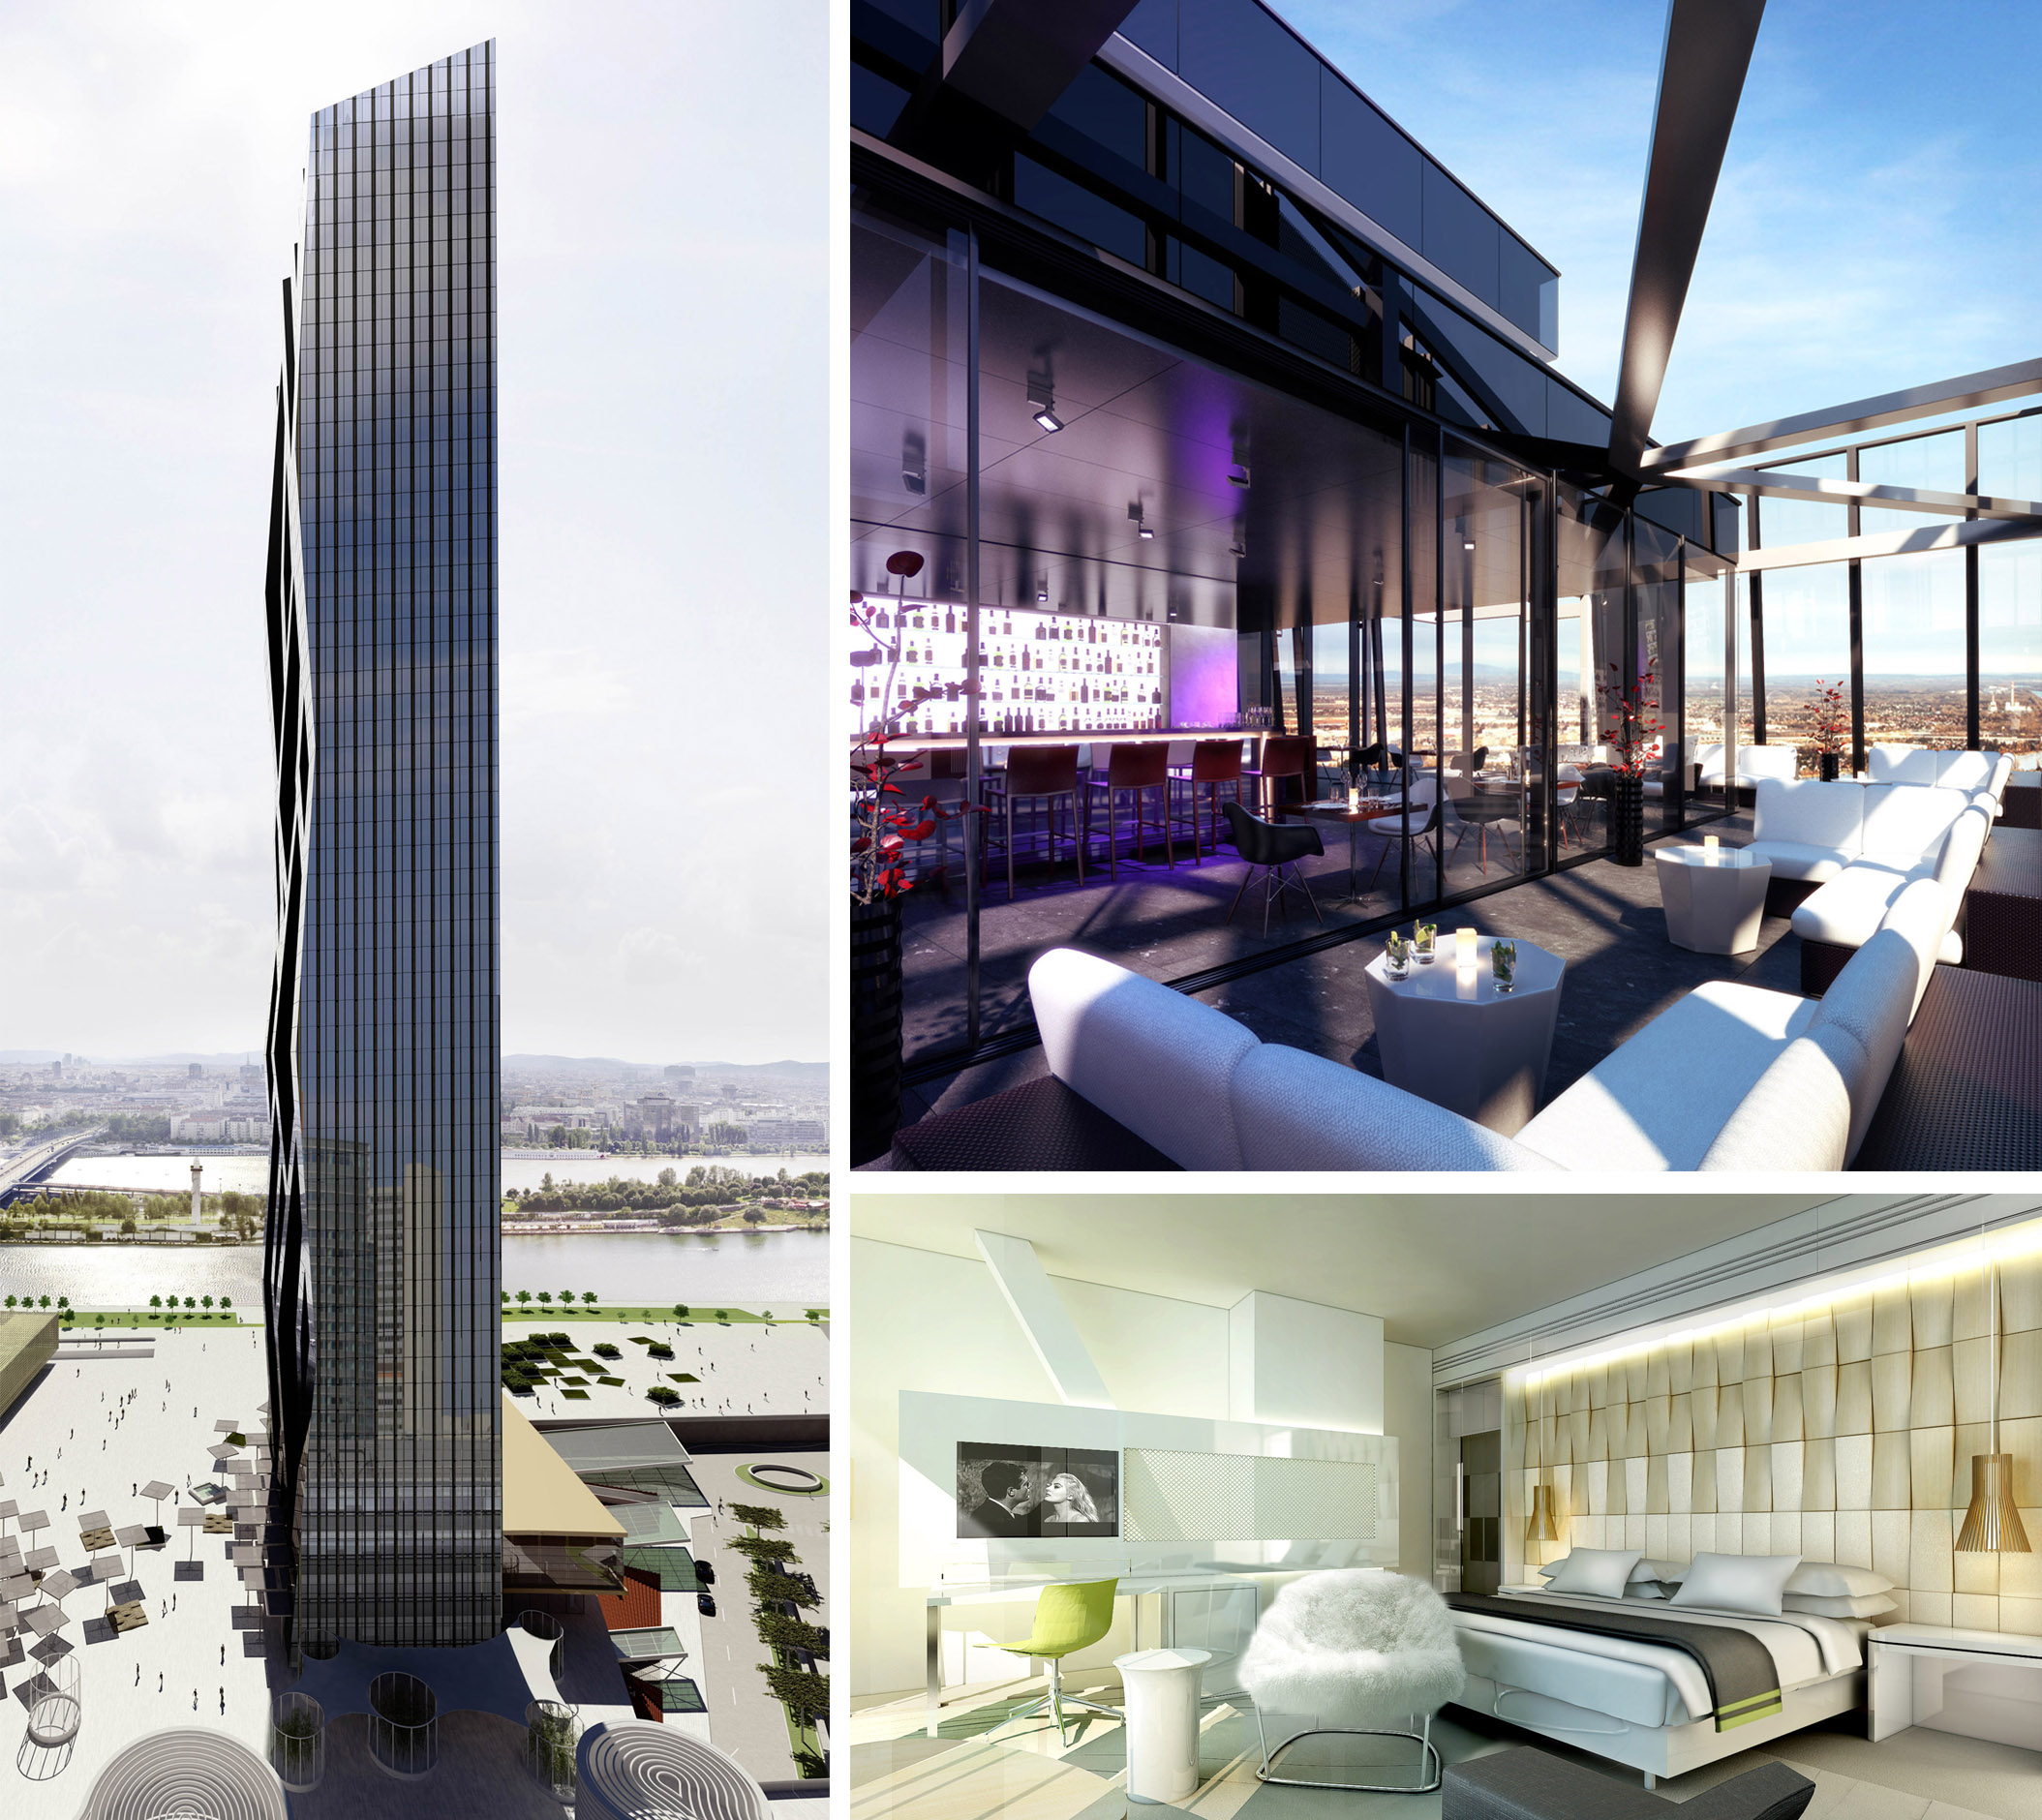 Puristisch-atemberaubende Architektur trifft auf stylisch-edles Interieur-Design: Das 2014 eröffnete Meliá Vienna im Donau-City (DC) Tower.
